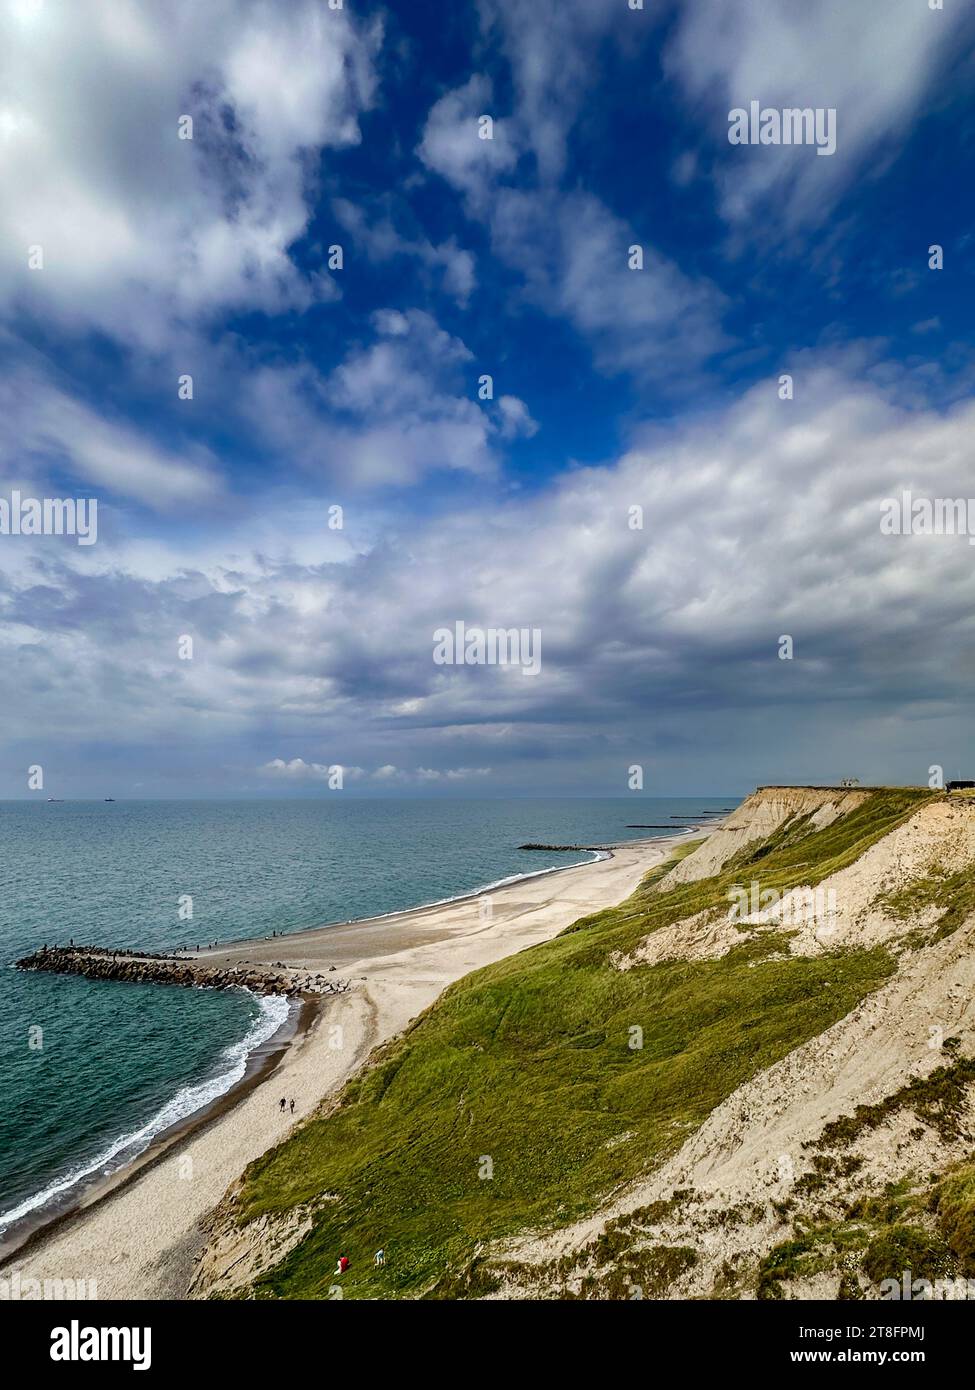 Coastal landscape on the west coast of Jutland near the lighthouse Bovbjerg Fyr, Denmark. Stock Photo